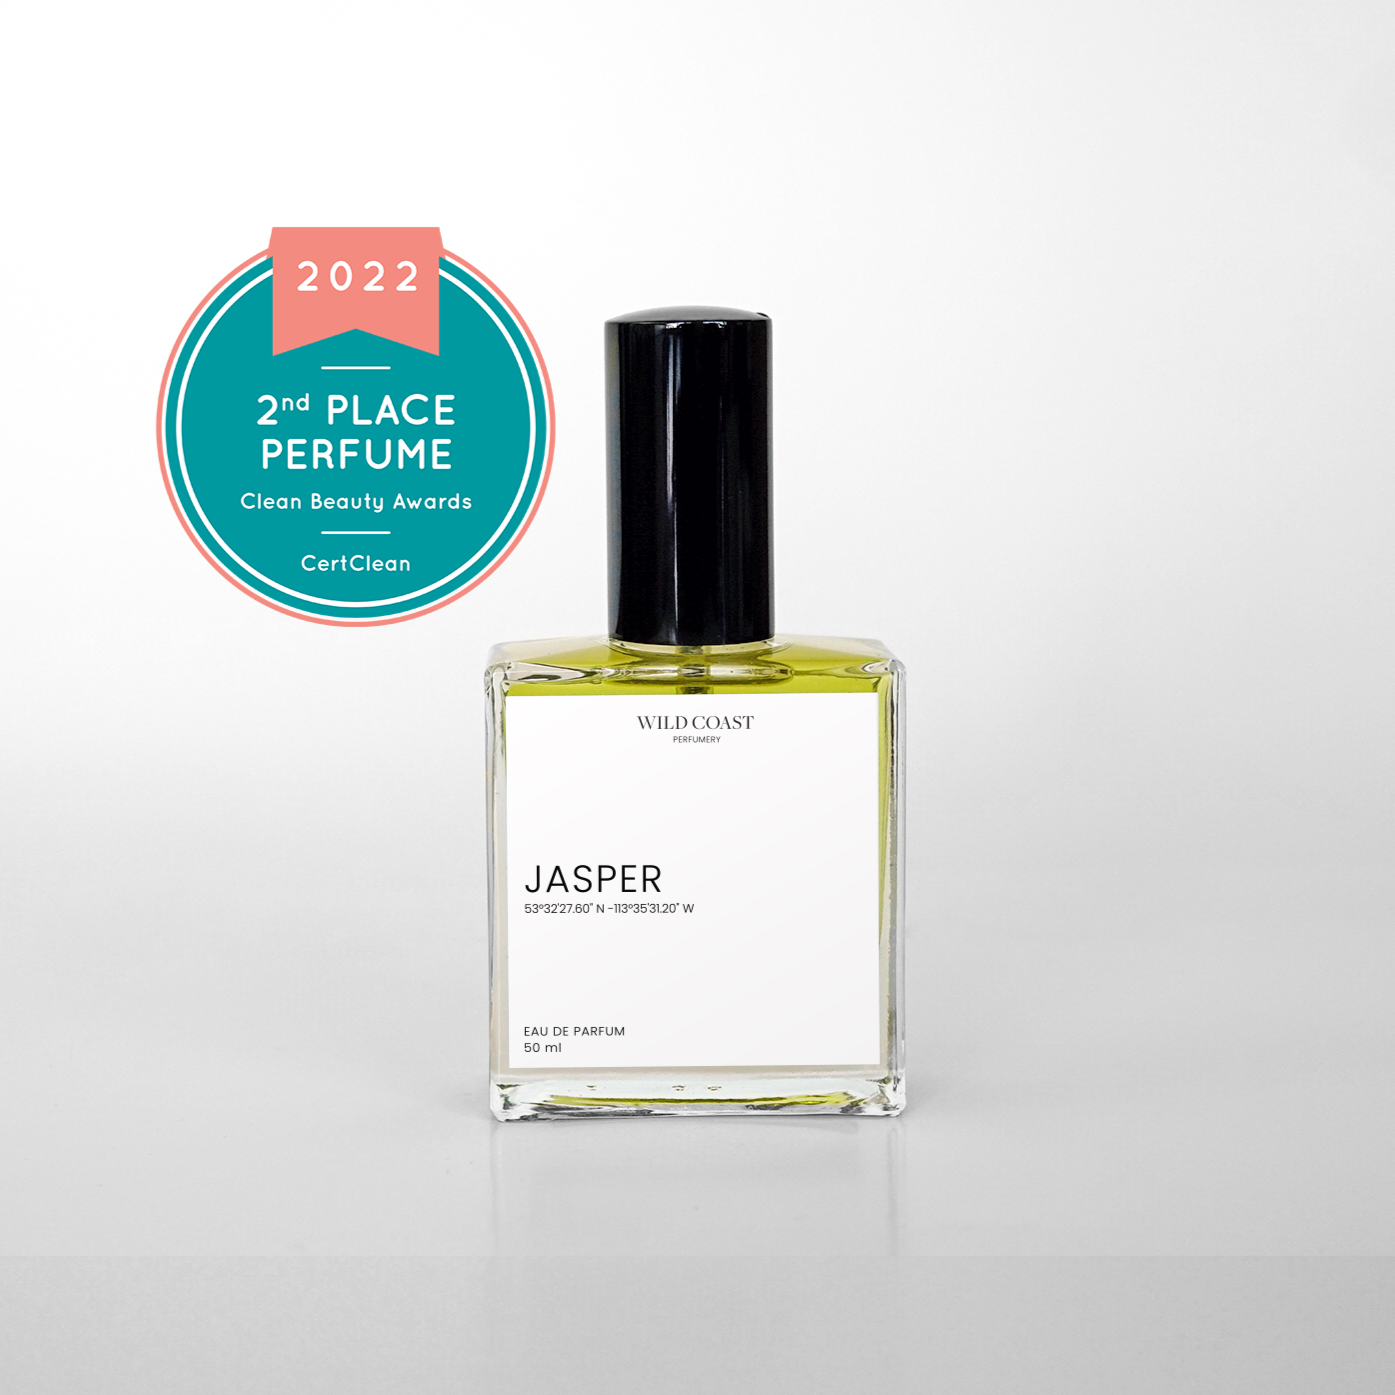 Jasper eau de parfum